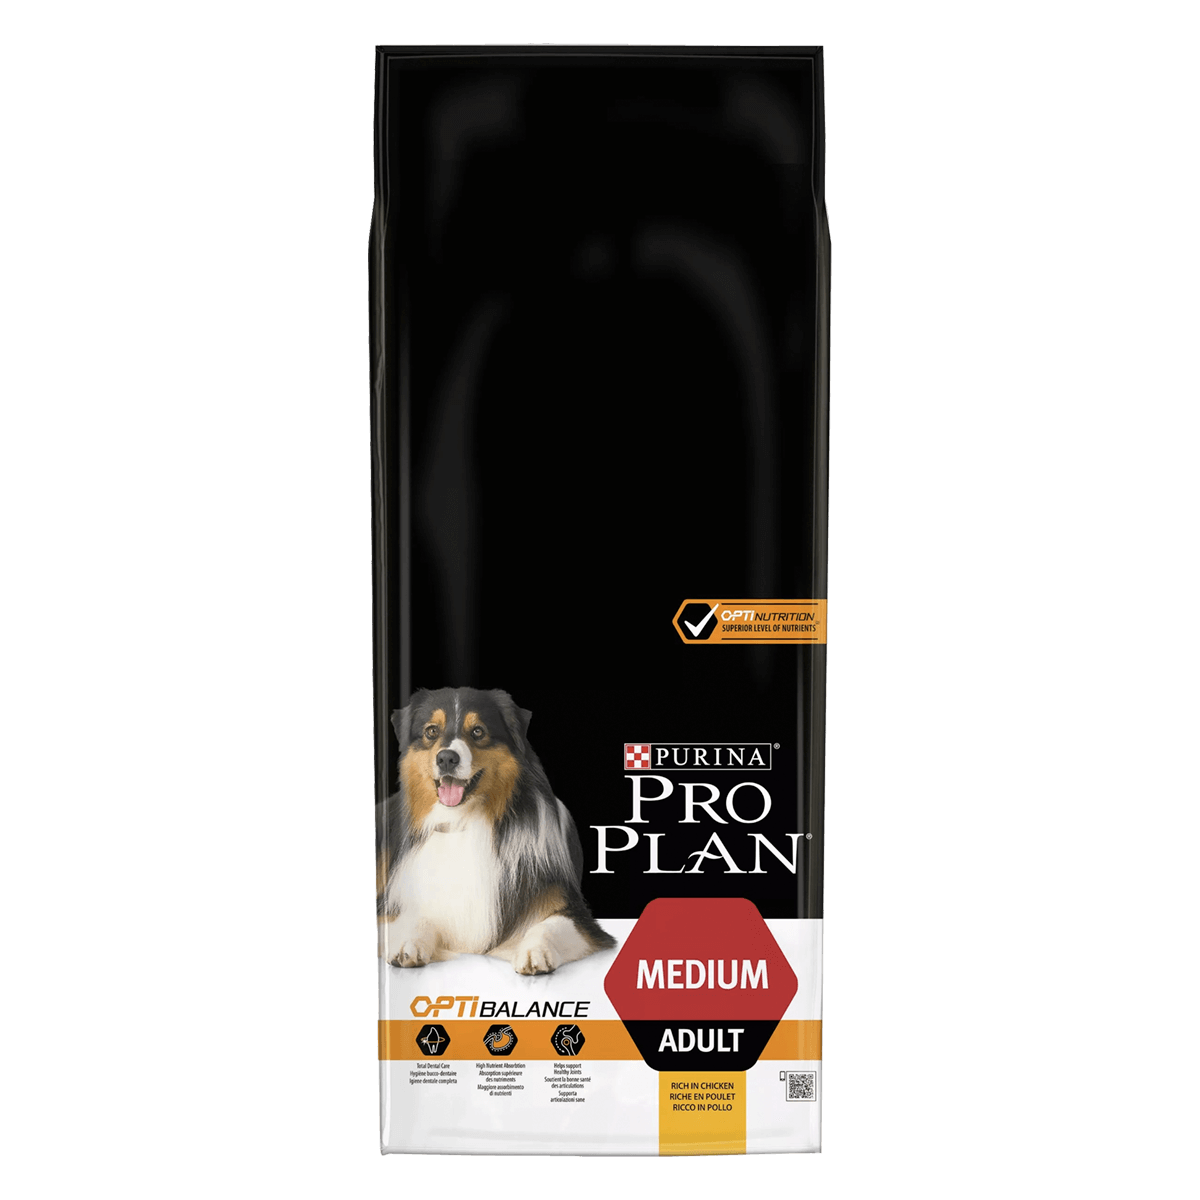 Purina Pro Plan Dog Adult Medium Optibalance 14 кг - корм Пурина для взрослых собак средних пород